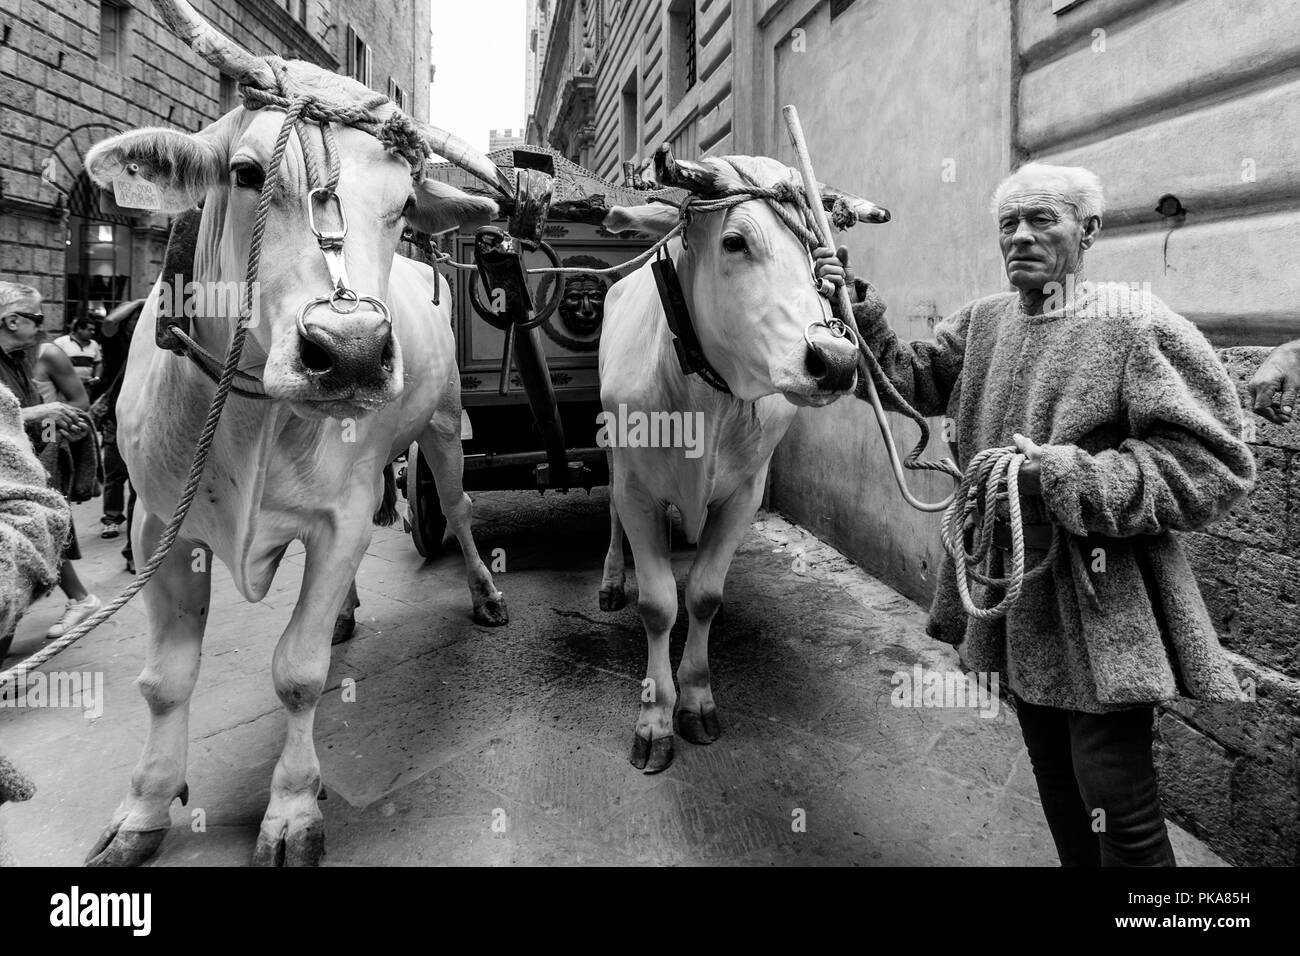 L 'traditionnels' sont des boeufs blancs ont défilé dans les rues de Sienne, le Palio di Siena, Sienne, Italie Banque D'Images